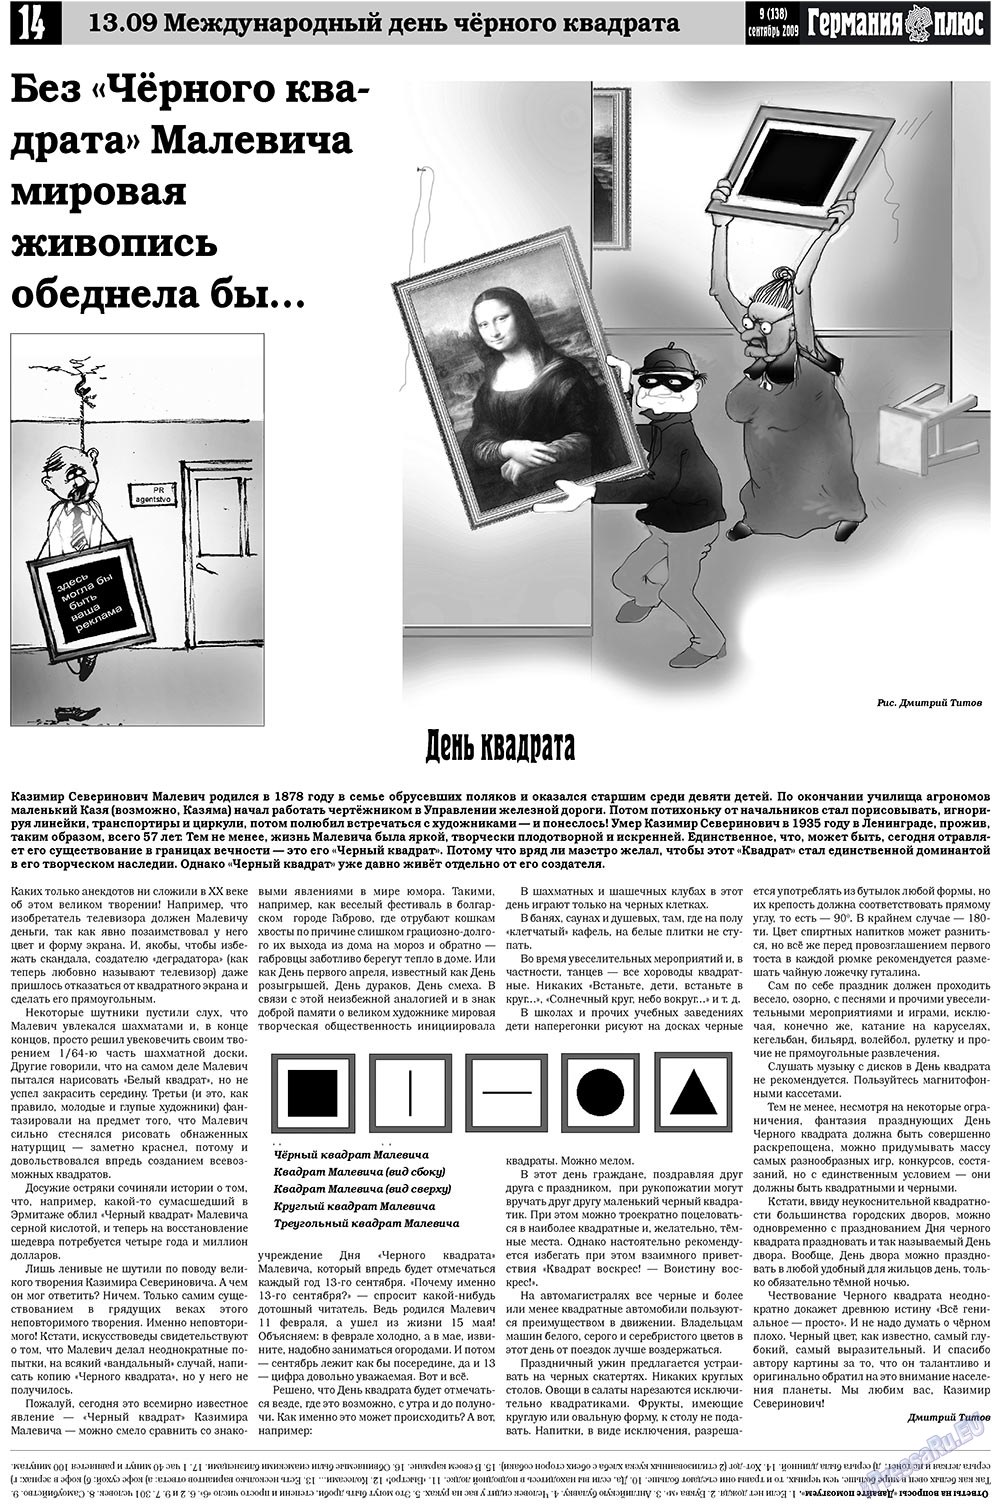 Германия плюс (газета). 2009 год, номер 9, стр. 18